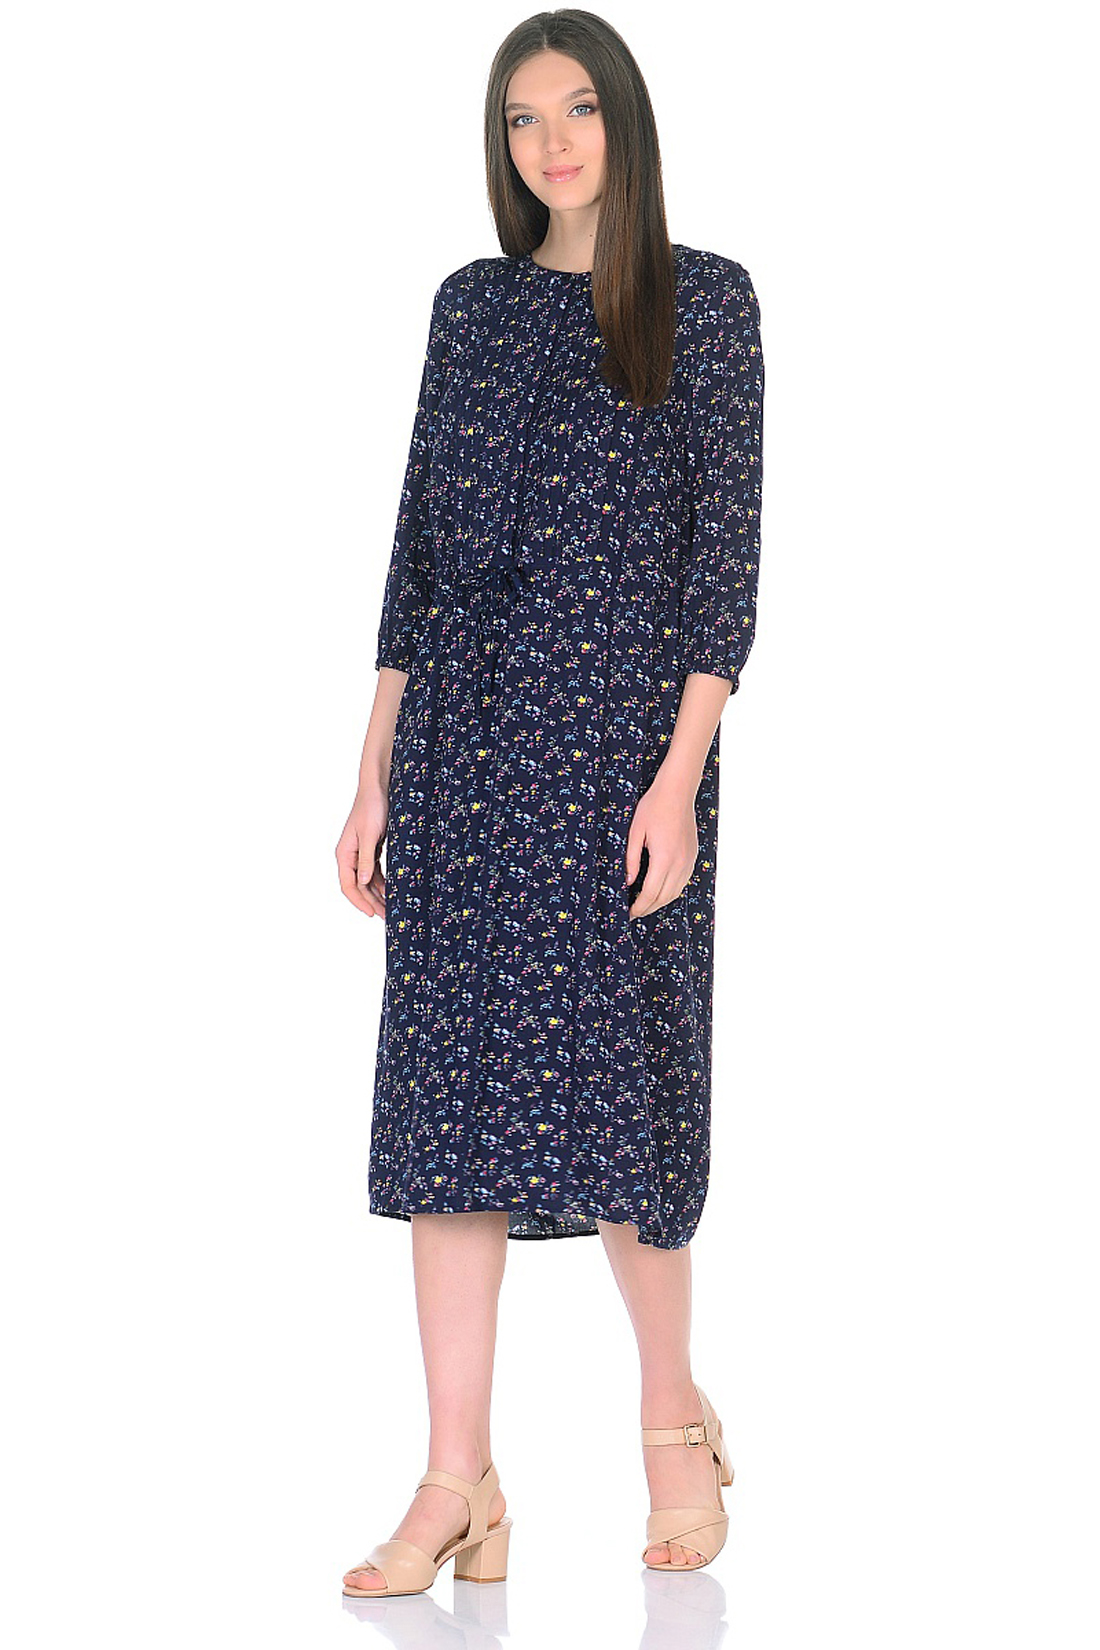 Платье с мелким цветочным рисунком (арт. baon B458013), размер XXL Платье с мелким цветочным рисунком (арт. baon B458013) - фото 1